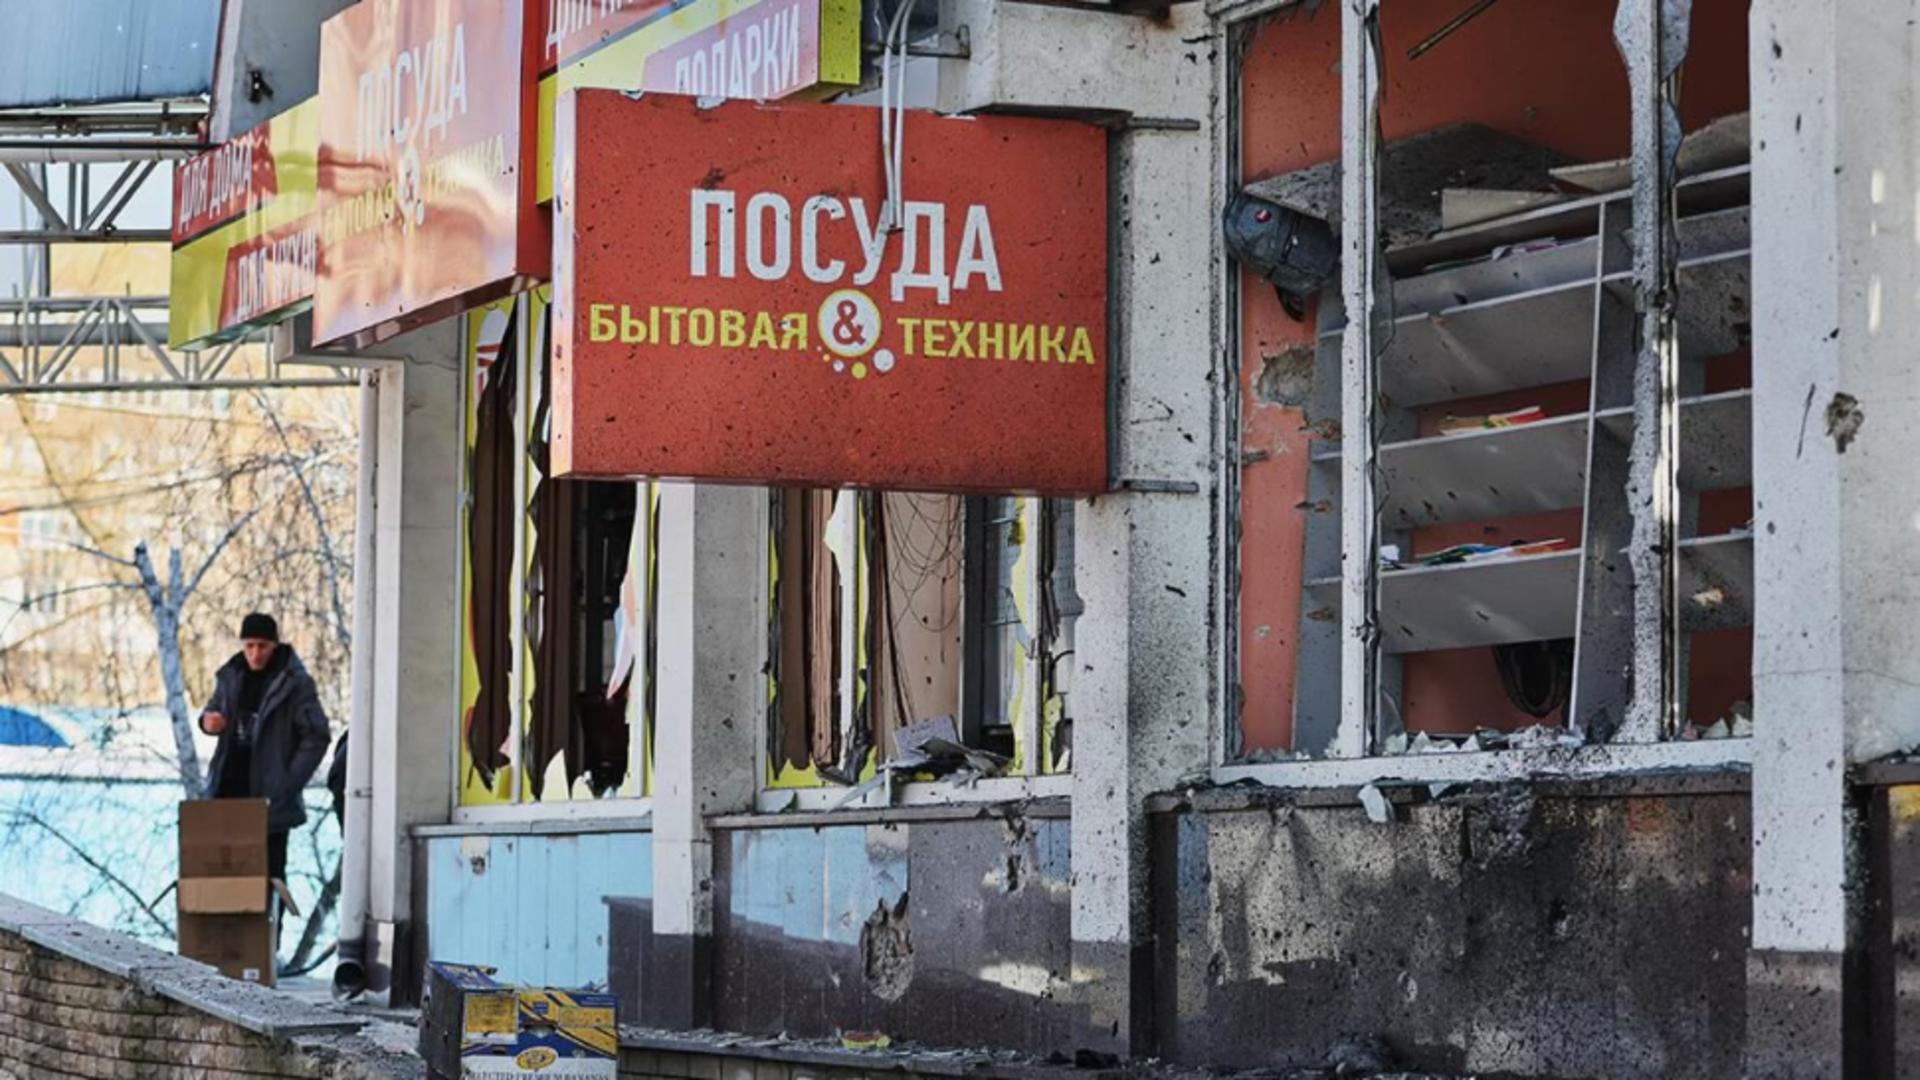 Război în Ucraina, ziua 698: MAE rus denunţă „un act barbar de terorism” la care Occidentul este complice, după bombardamentul din Doneţk – LIVE TEXT